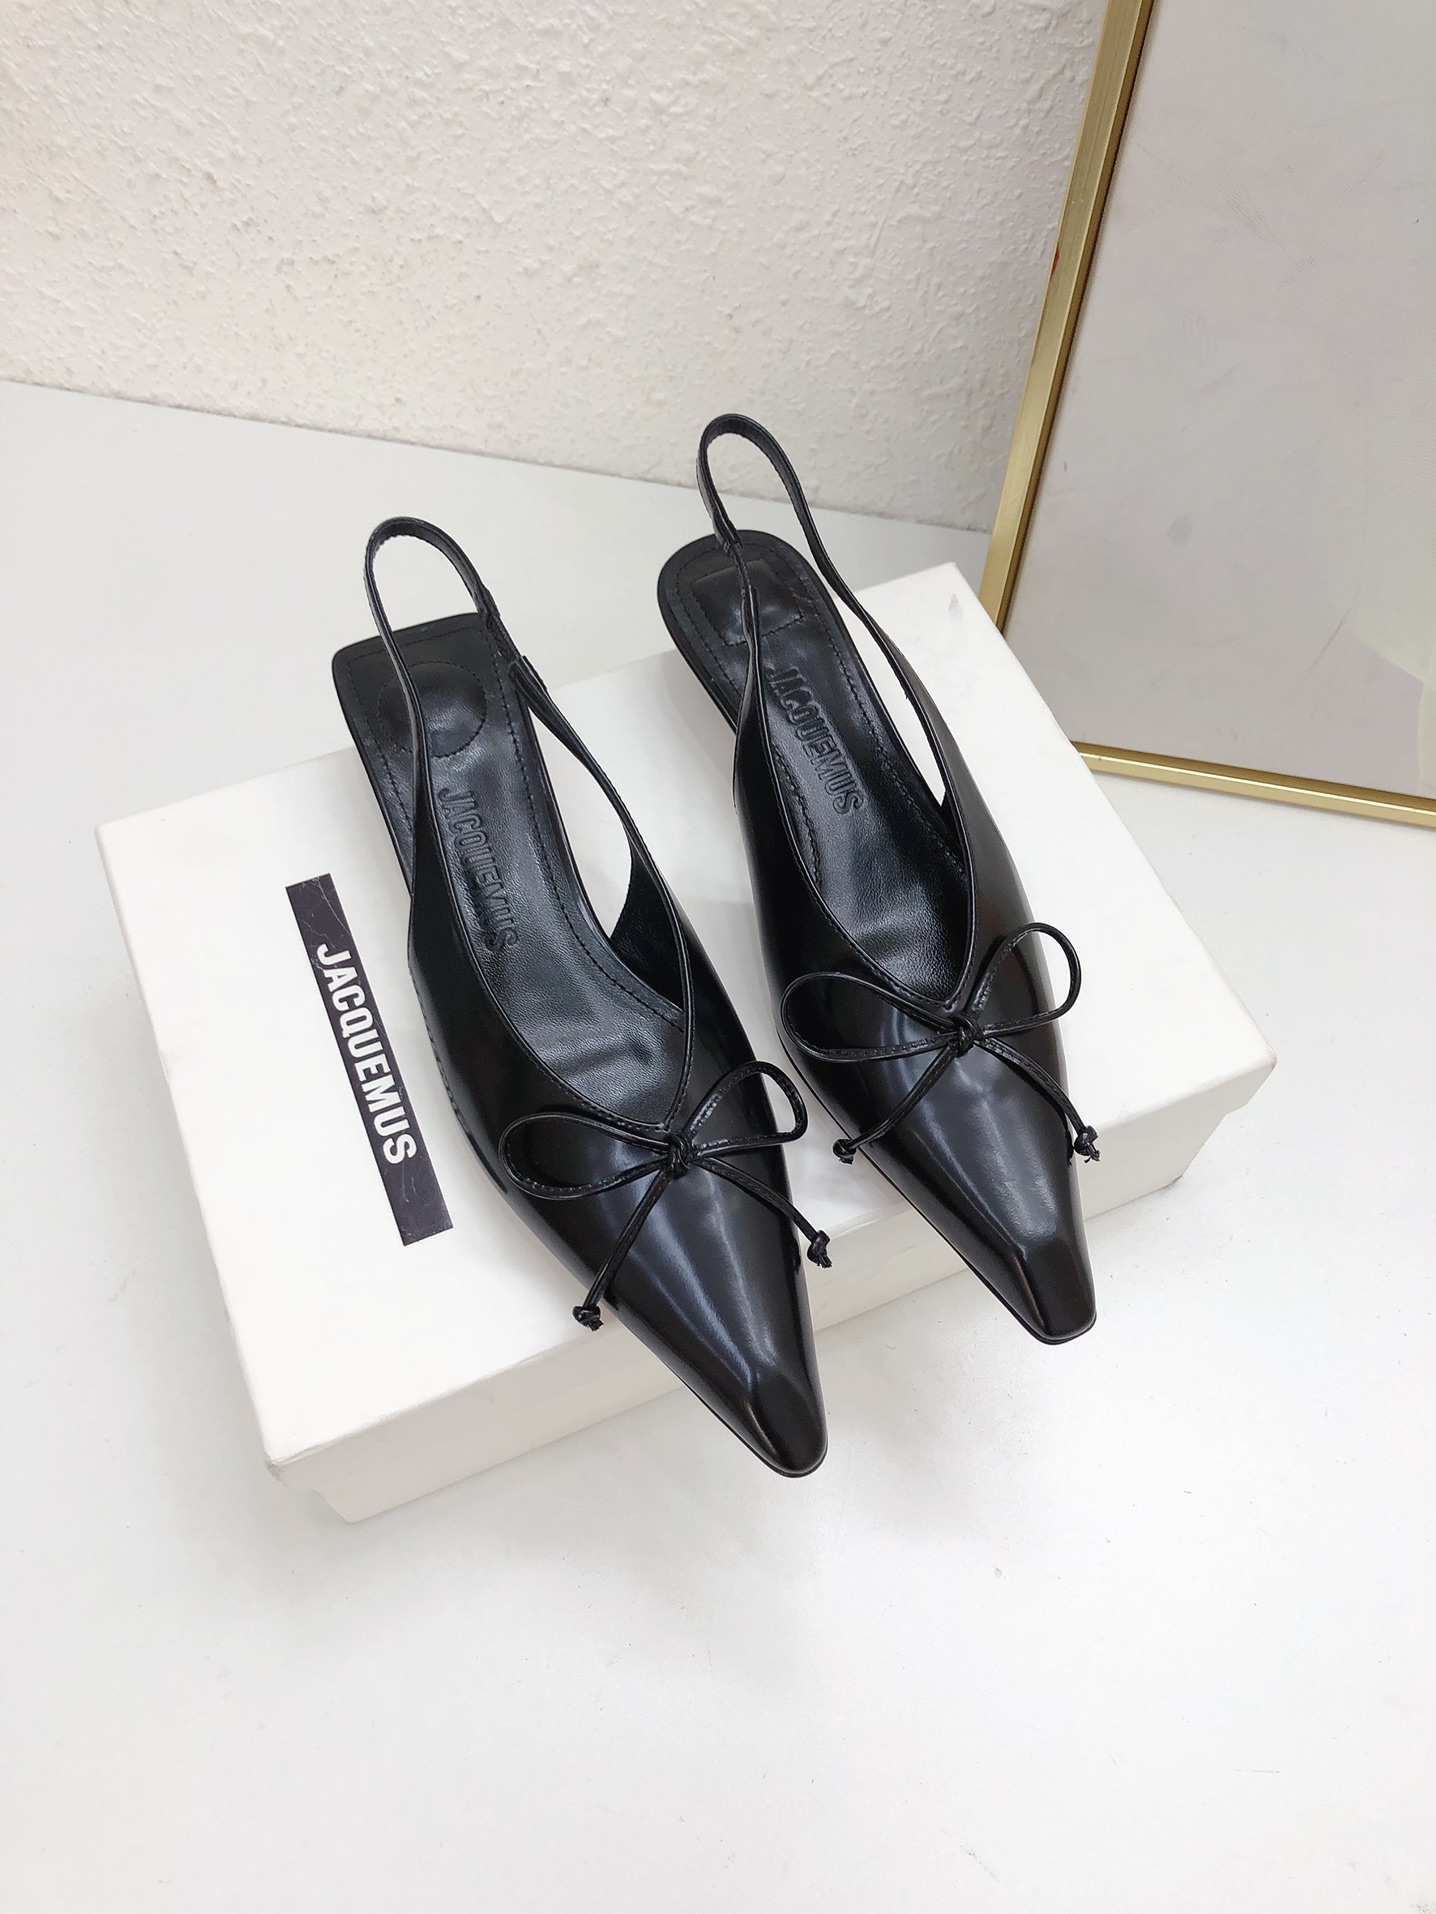 Jacquemus Chaussures Sandales Noir Jaune Genuine Leather Peau de mouton Collection printemps – été